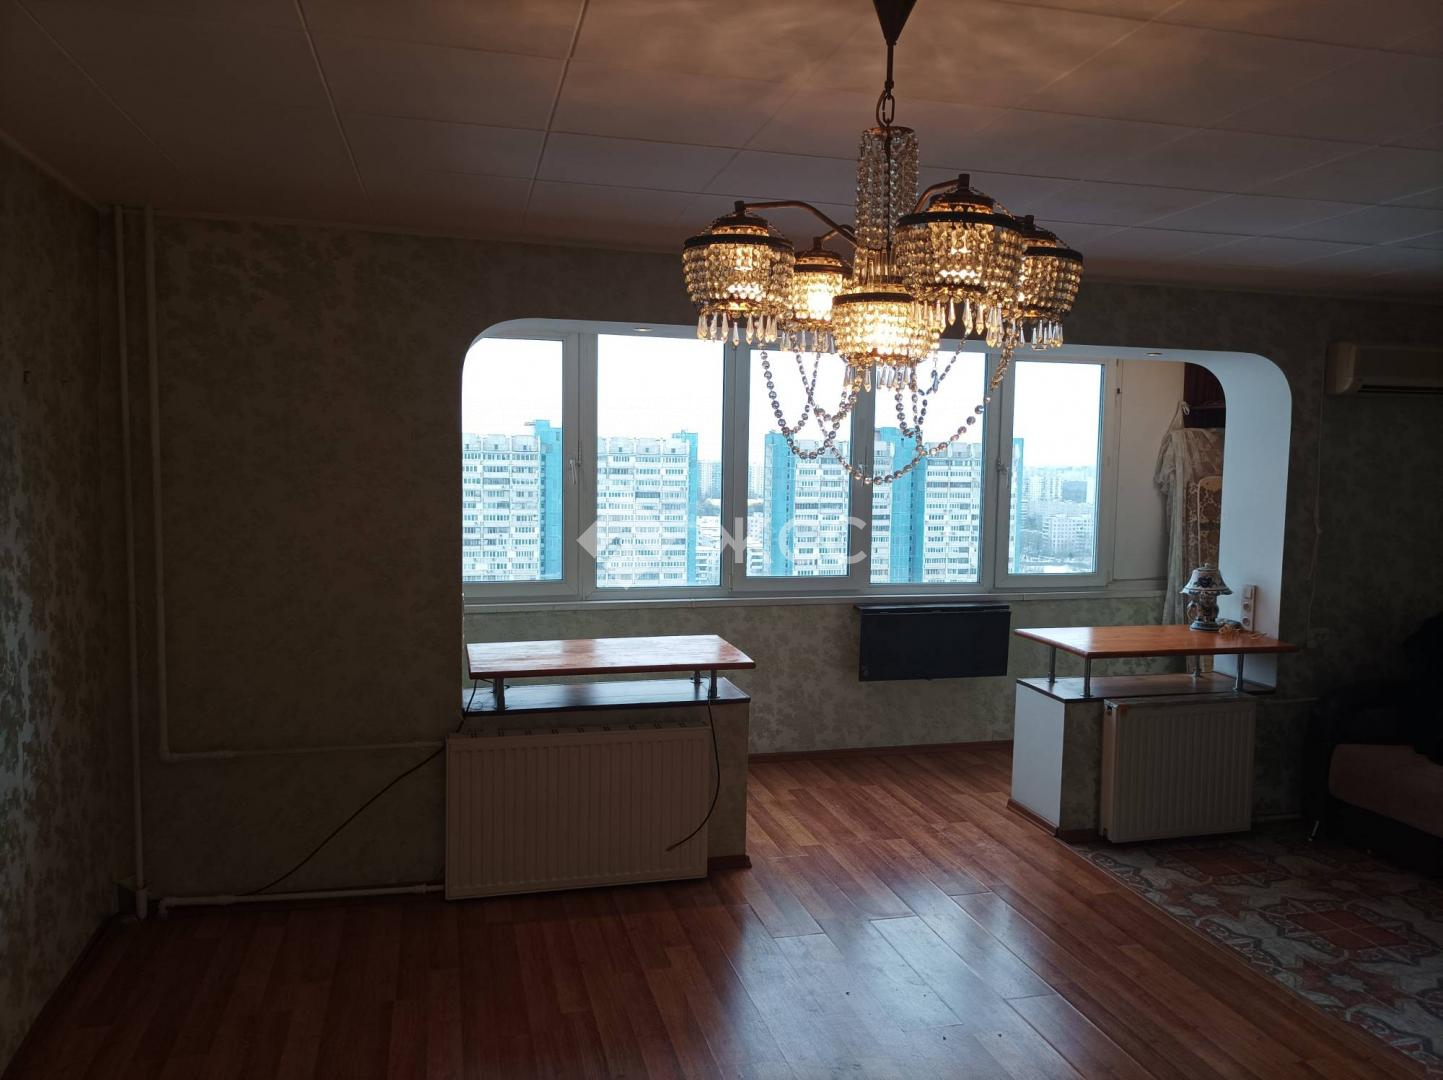 Продам квартиру в Москве по адресу Тарусская улица, 22к1, площадь 425 квм Недвижимость Москва (Россия)  1 единственный взрослый собственник с постройки дома с 1986 года